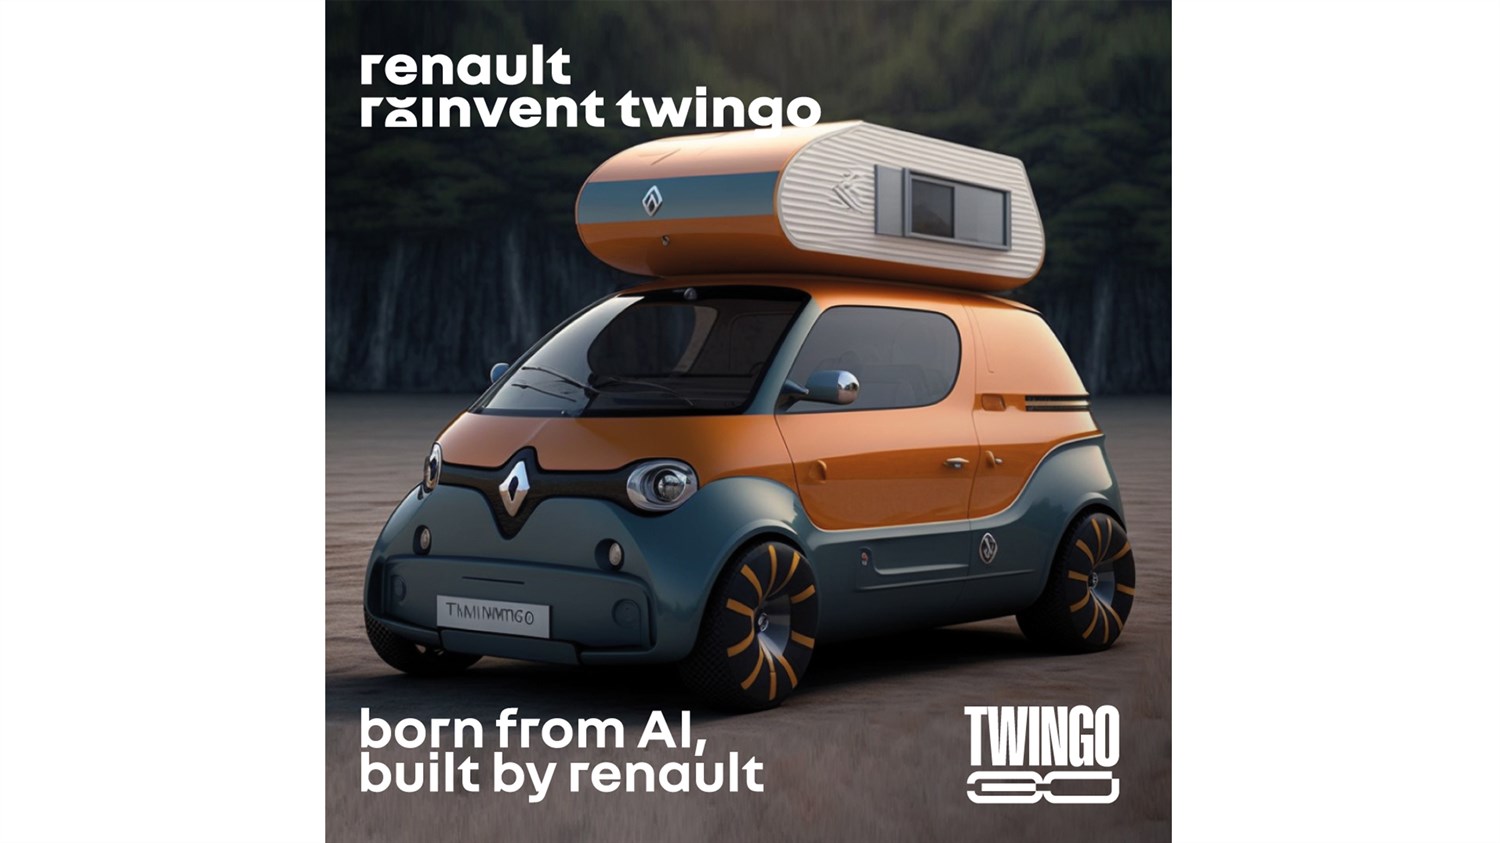 "Reinvent Twingo" promo